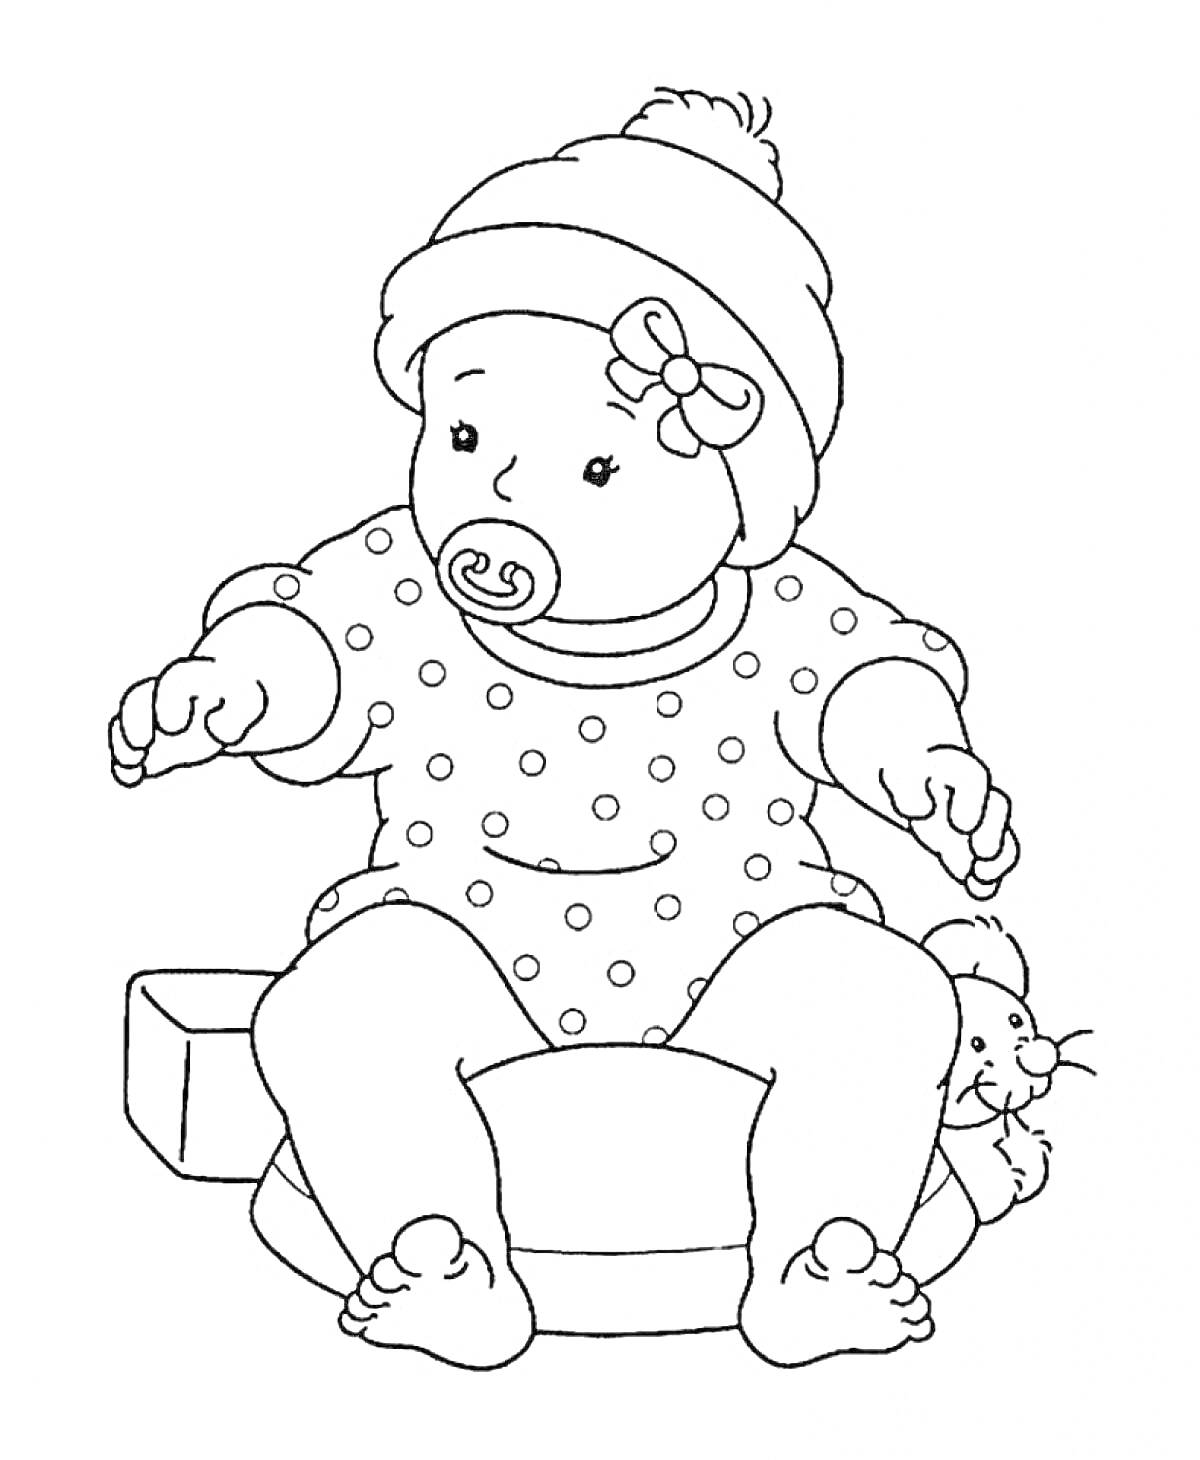 Кукла в горошковом комбинезоне с соской, шапкой, бантиком на голове, сидящая на стуле и держащая плюшевого мышонка